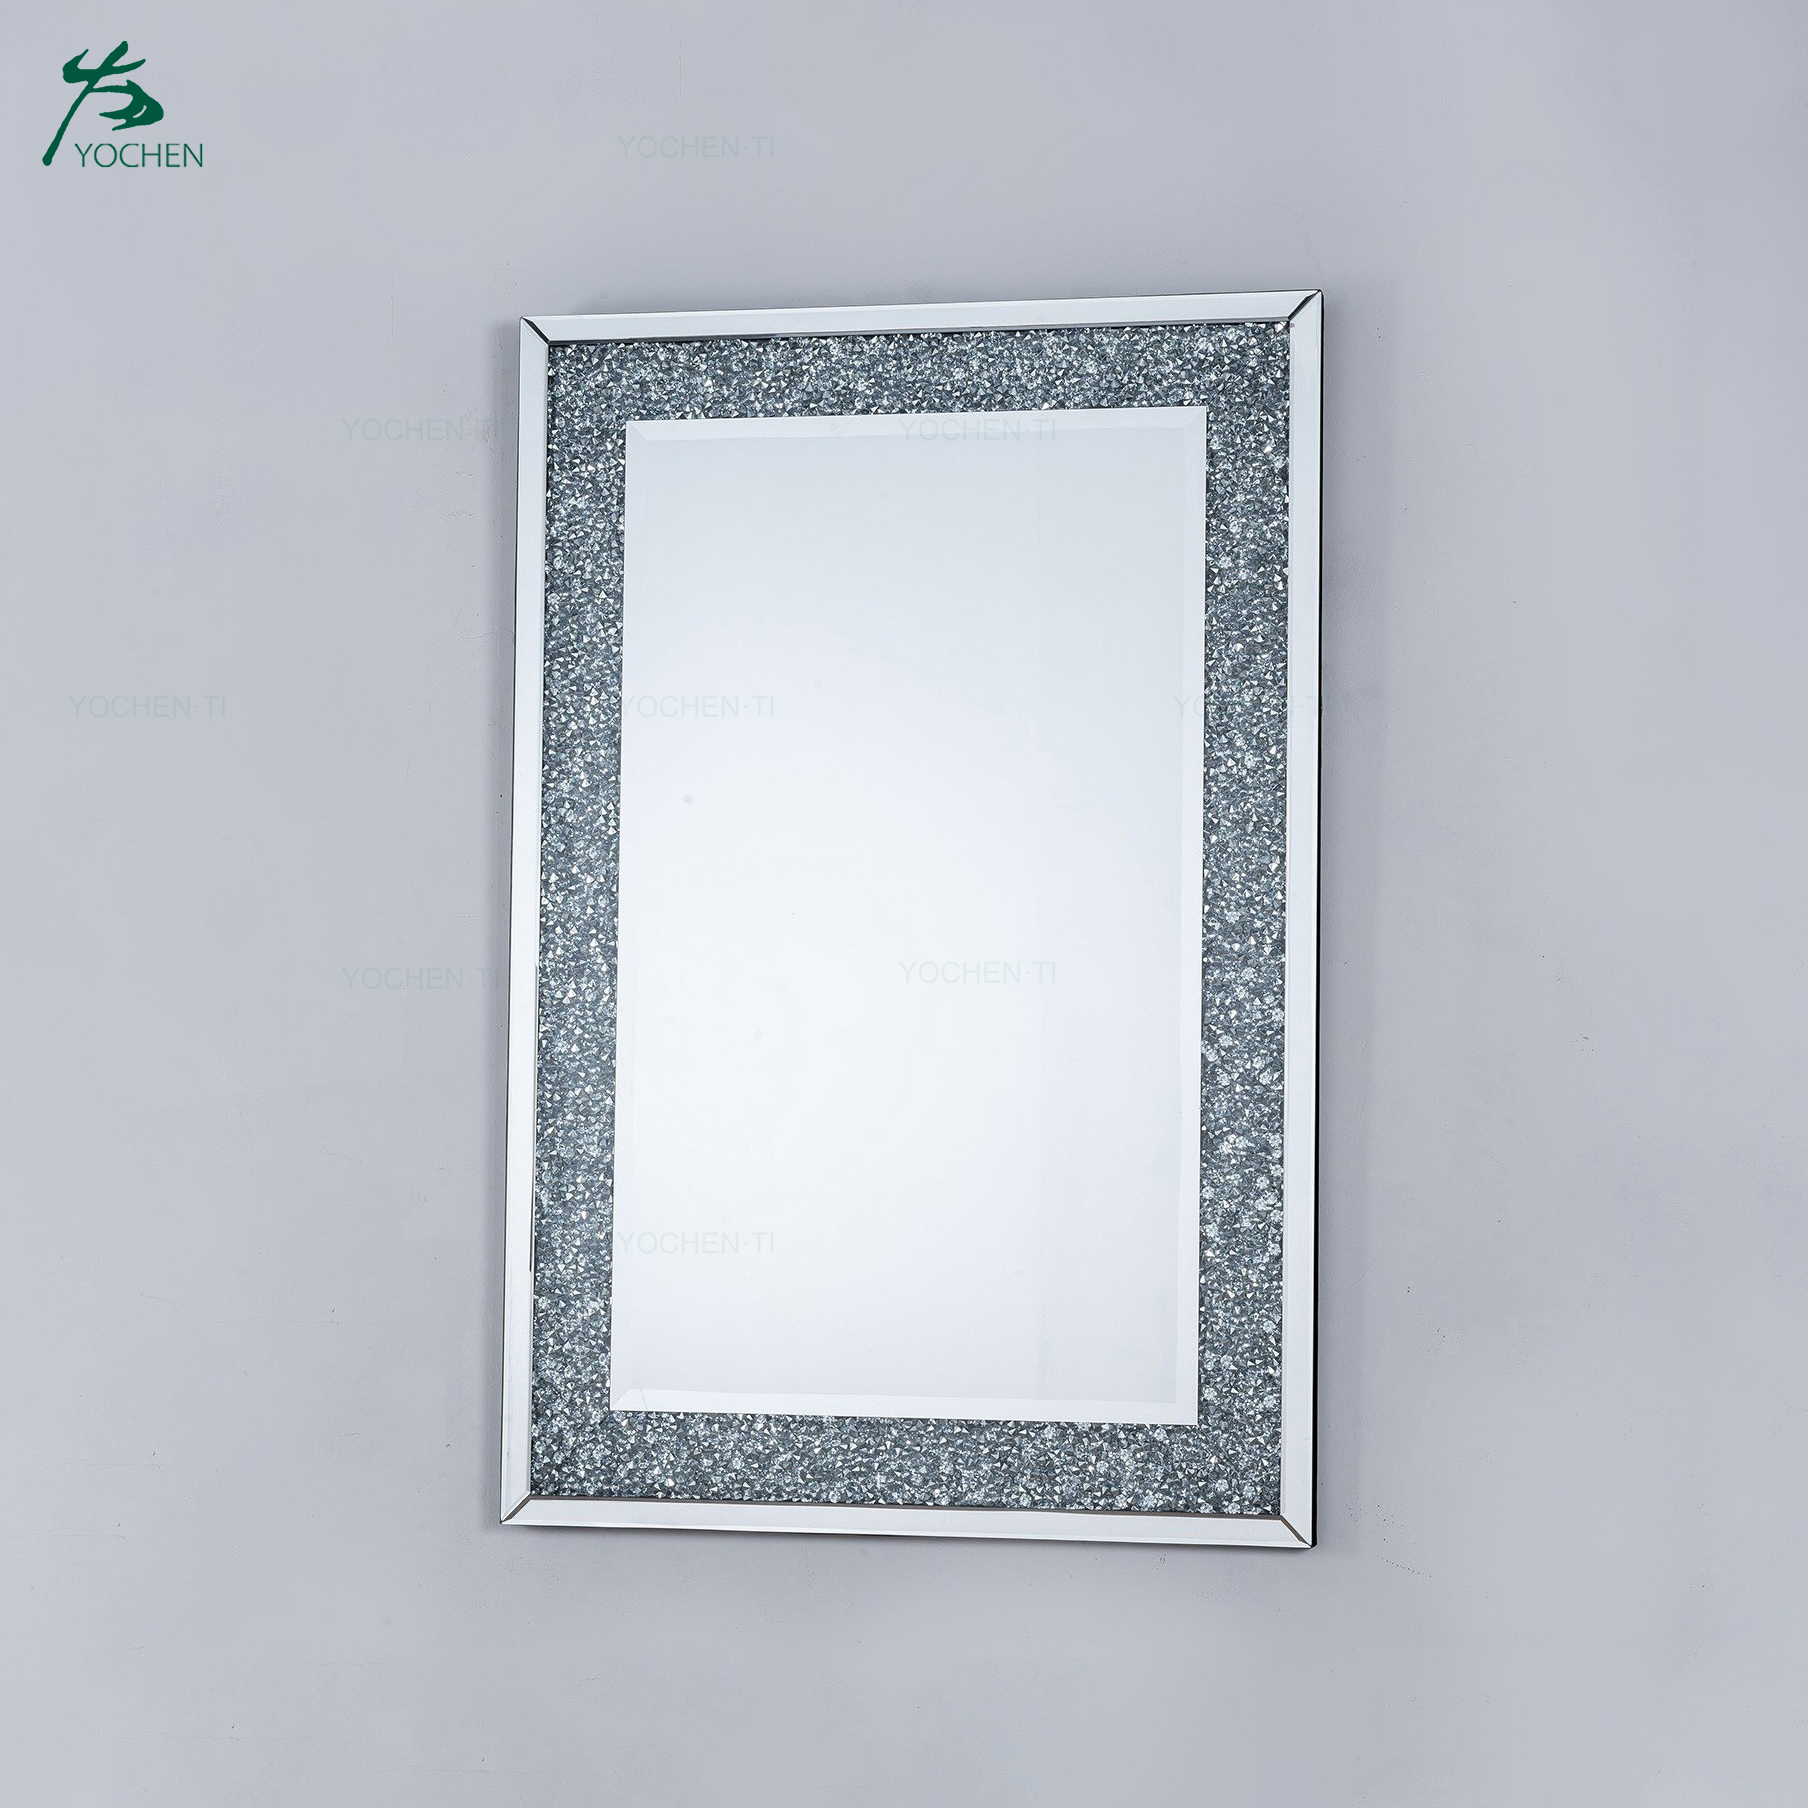 Diamond crush mirrored venetian glass rectangular mirror